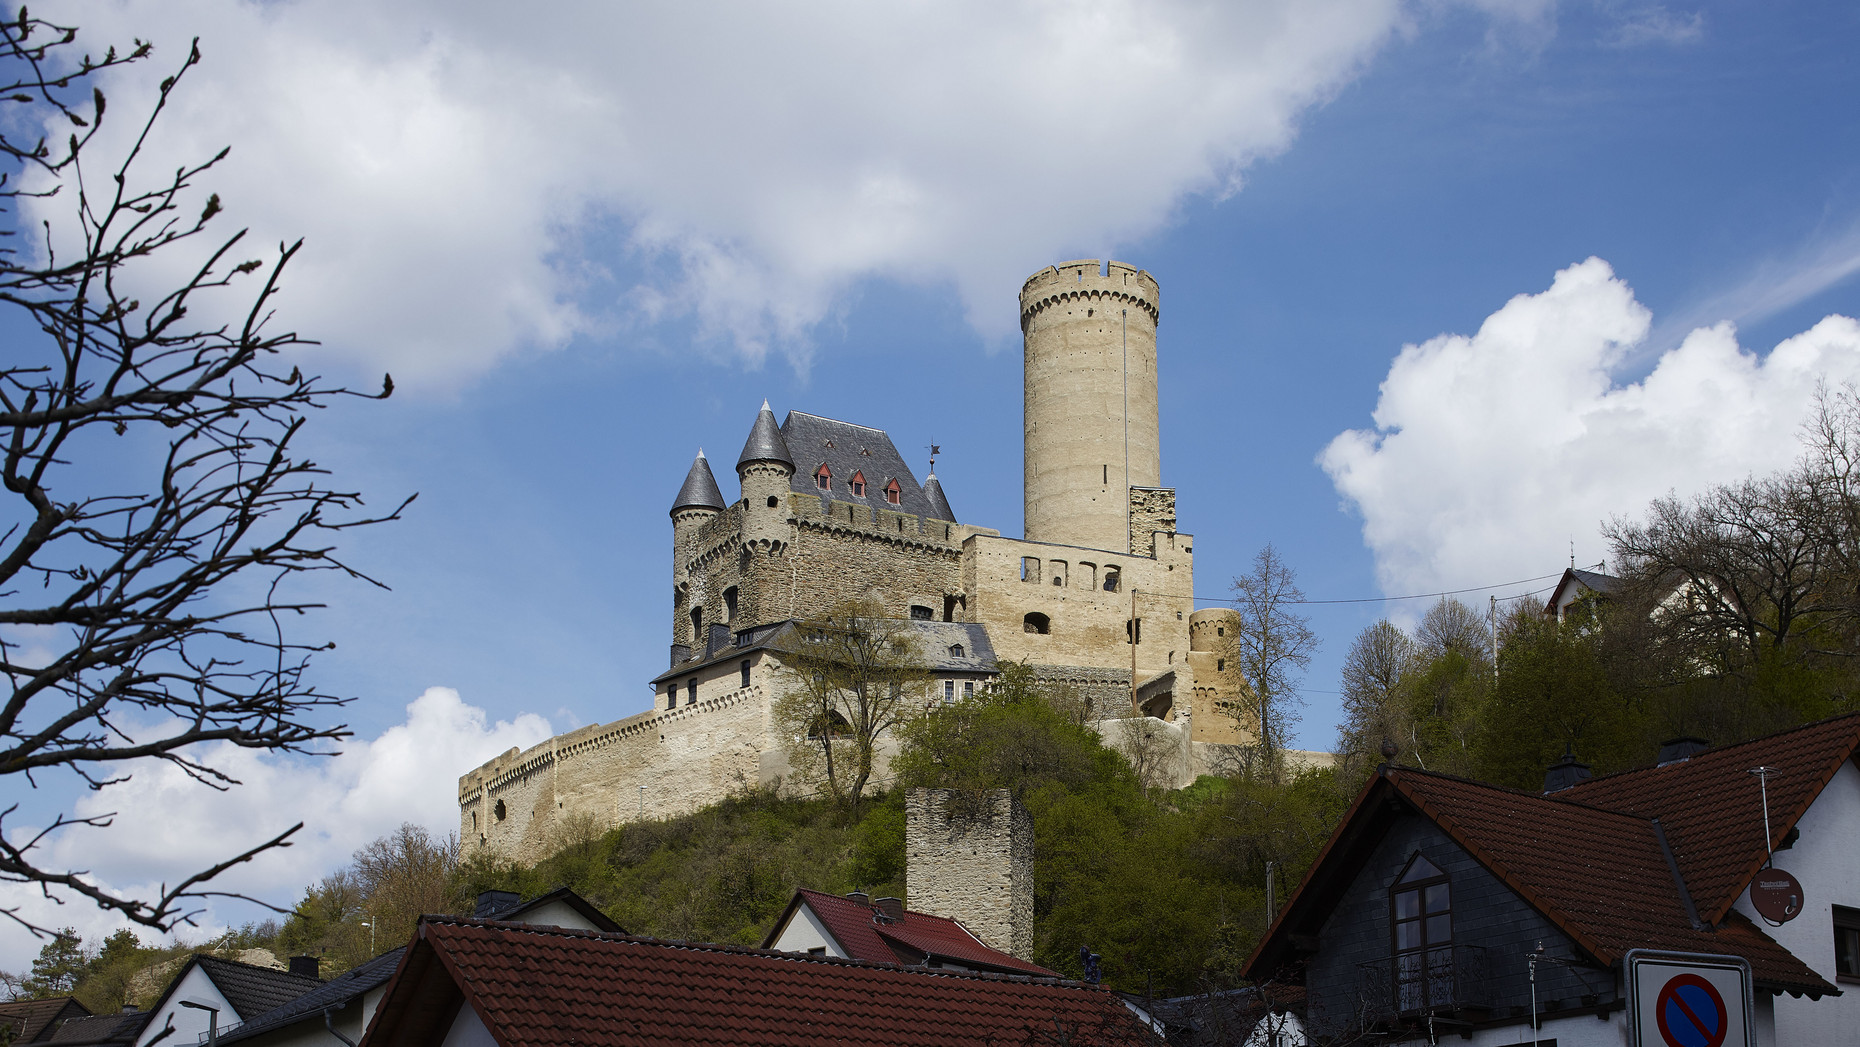 Ansicht der Burg Schwalbach, Berfired rechts vor blauem Himmel mit Wolken, links im Vordergrund und rechts Bäume, ein Wohnhaus.